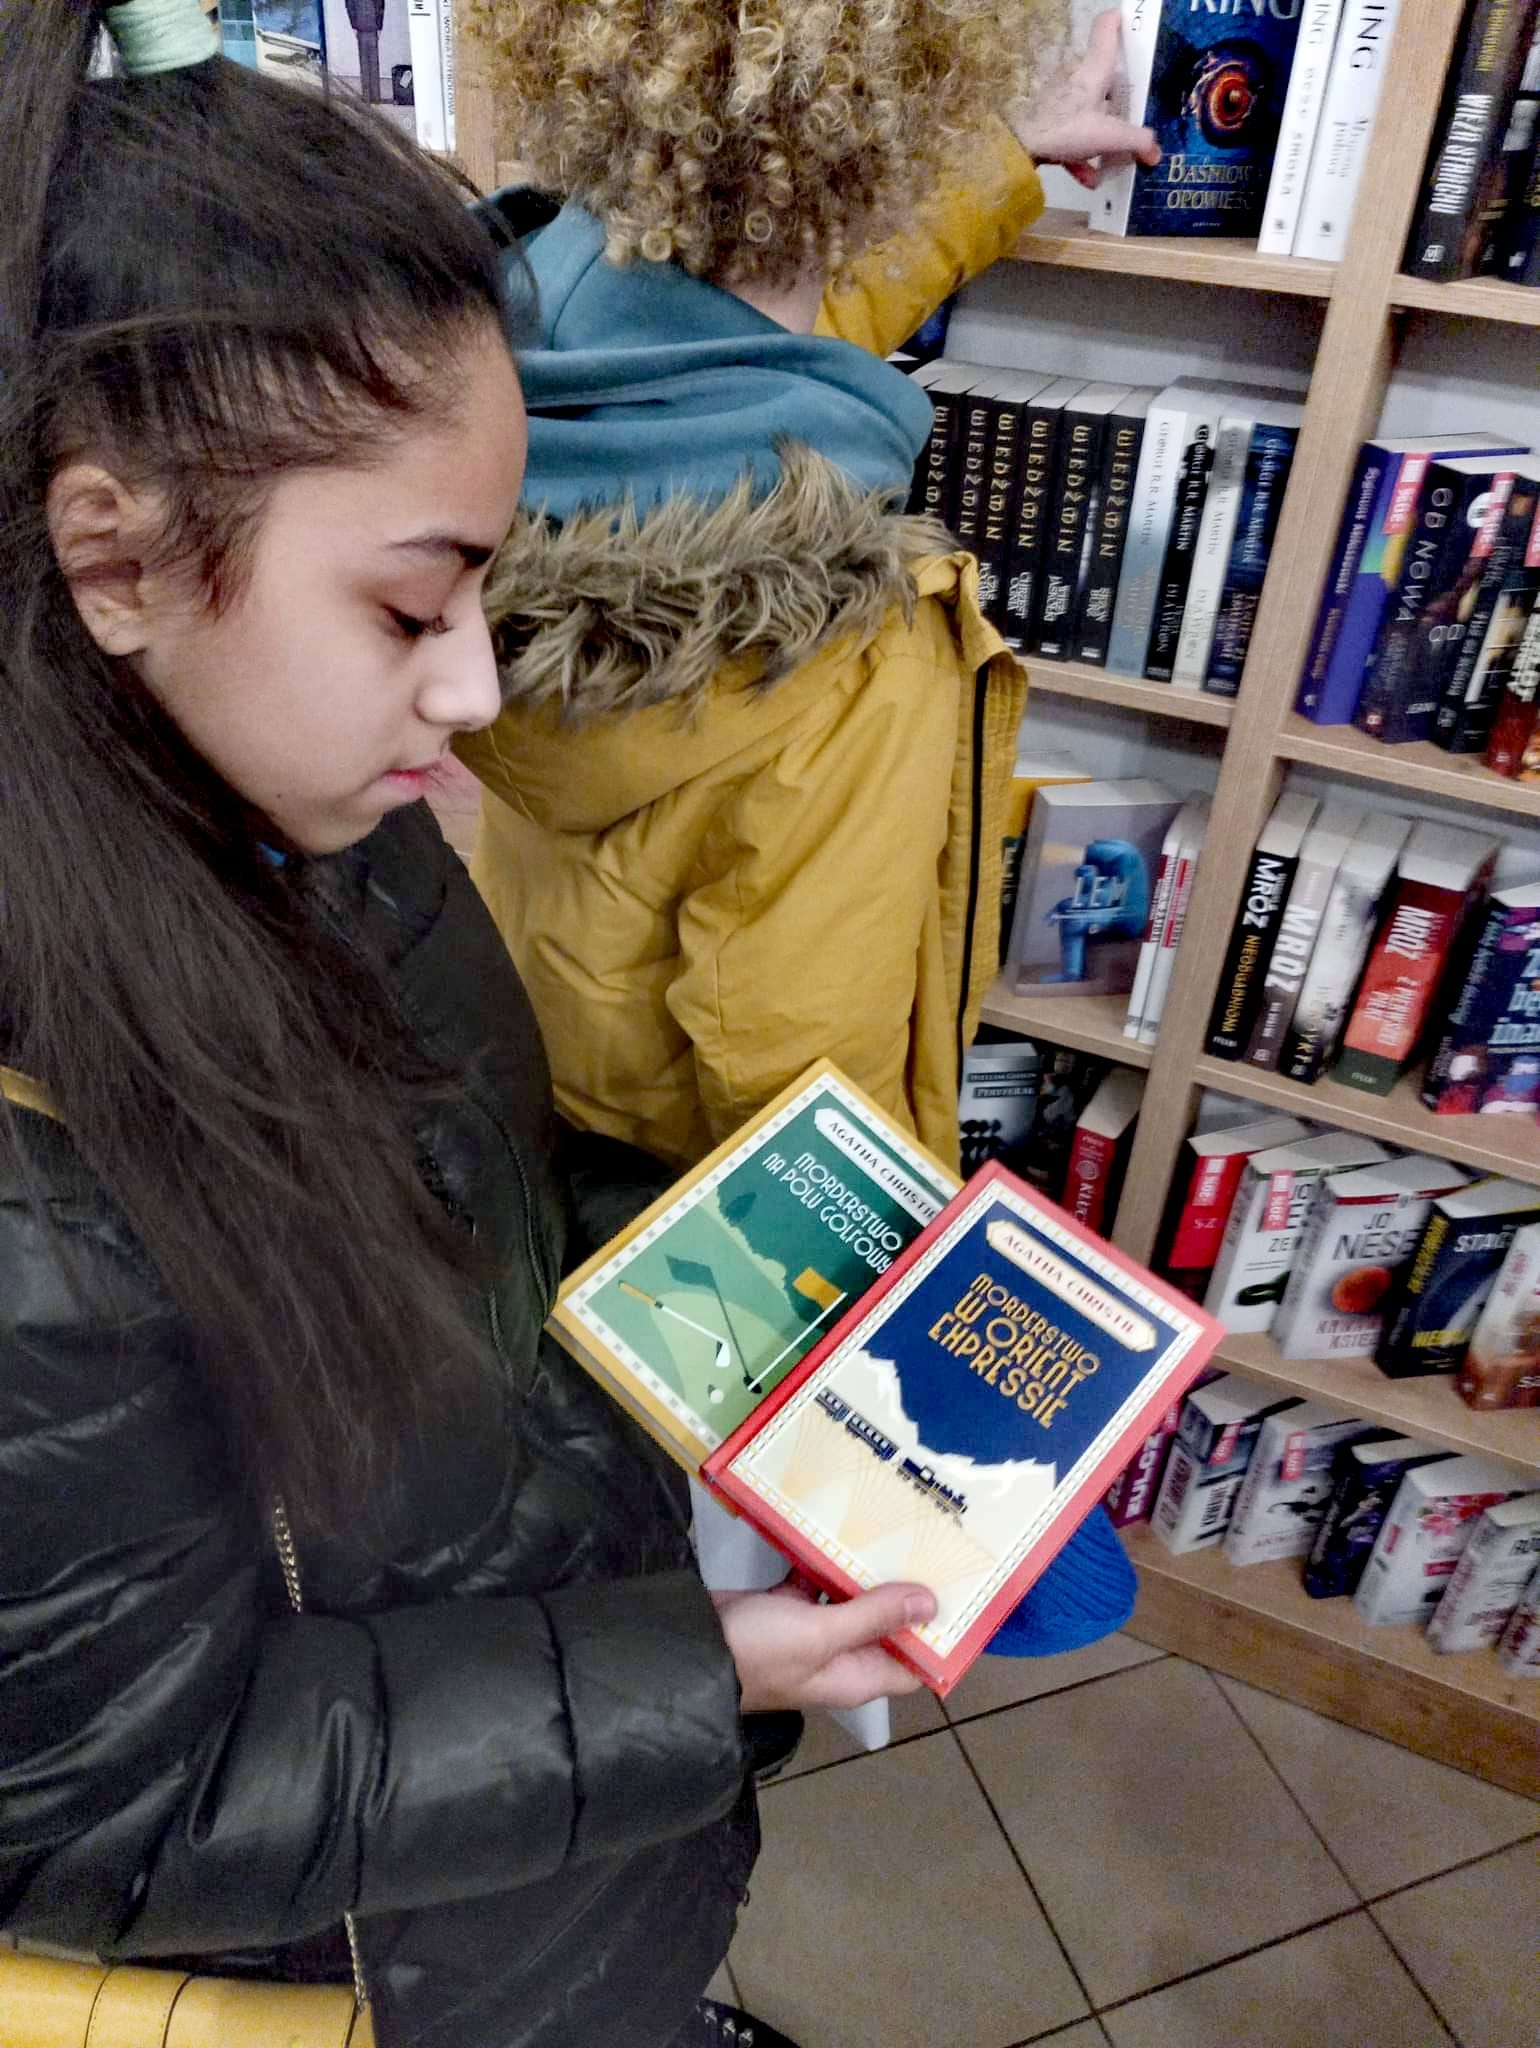 Ciemnowłosa dziewczyna stoi w księgarni i trzyma w rękach dwie książki